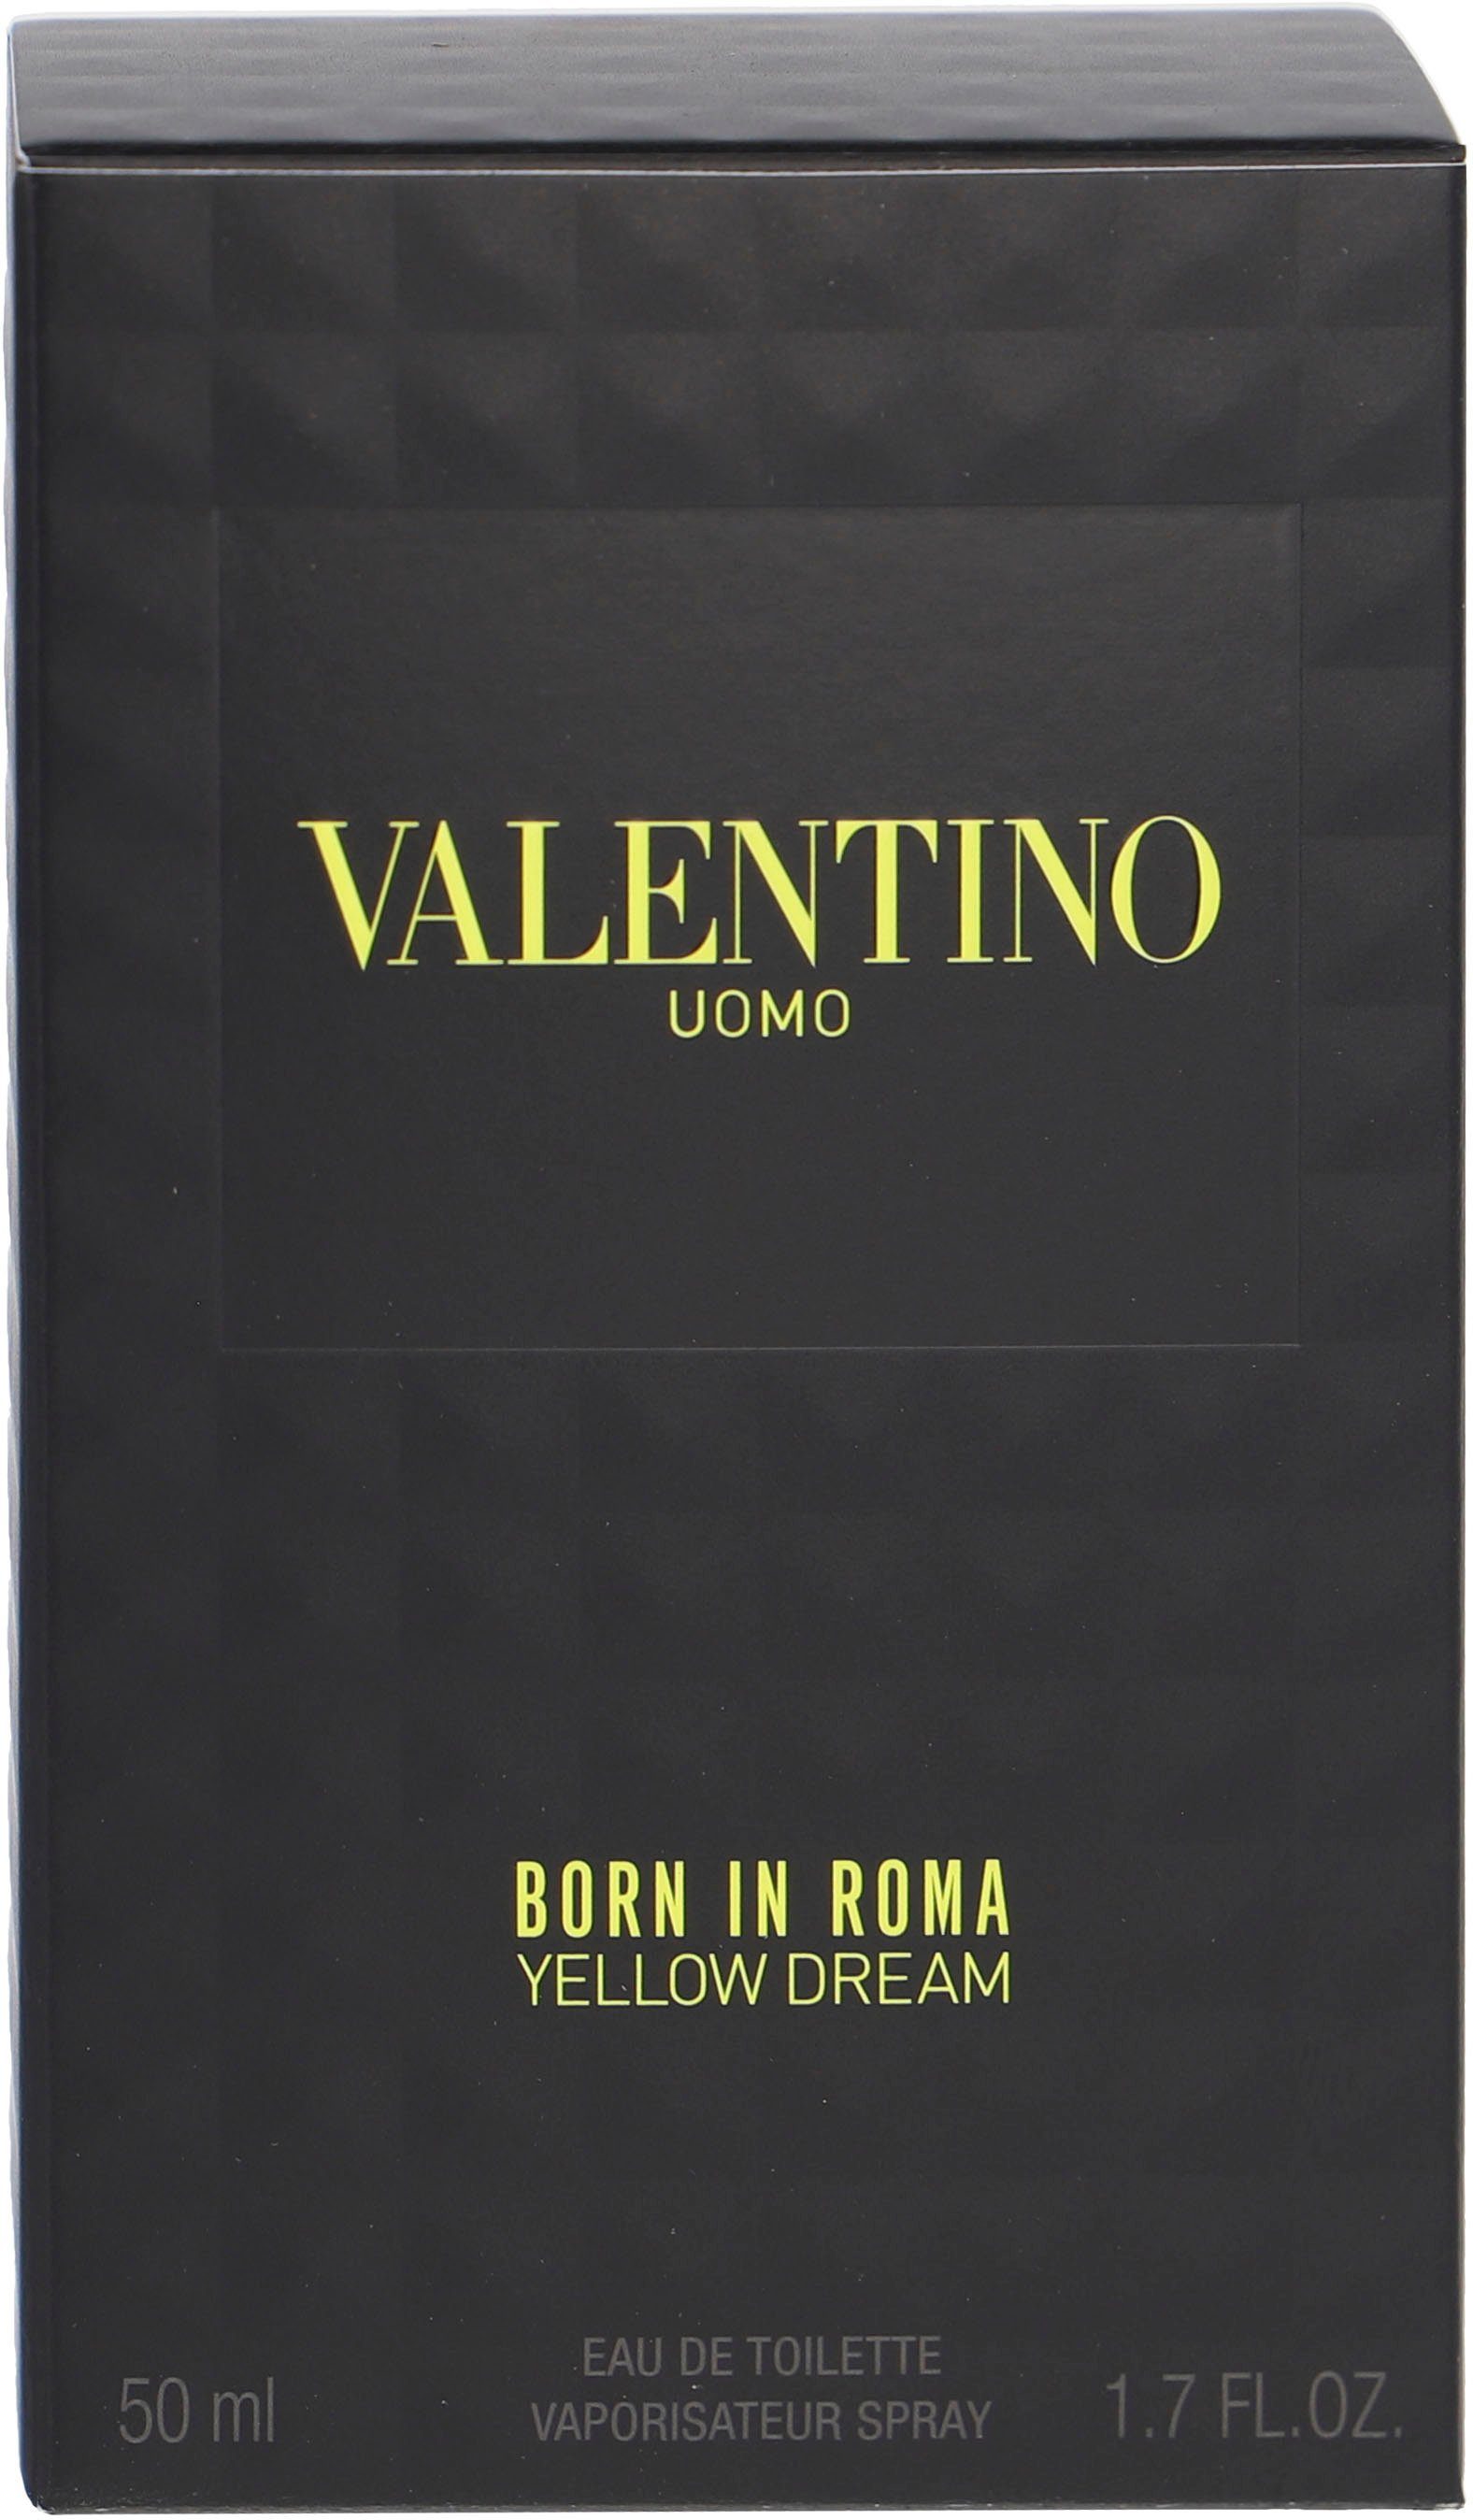 Uomo Dream de In Born Roma Valentino Toilette Eau Yellow